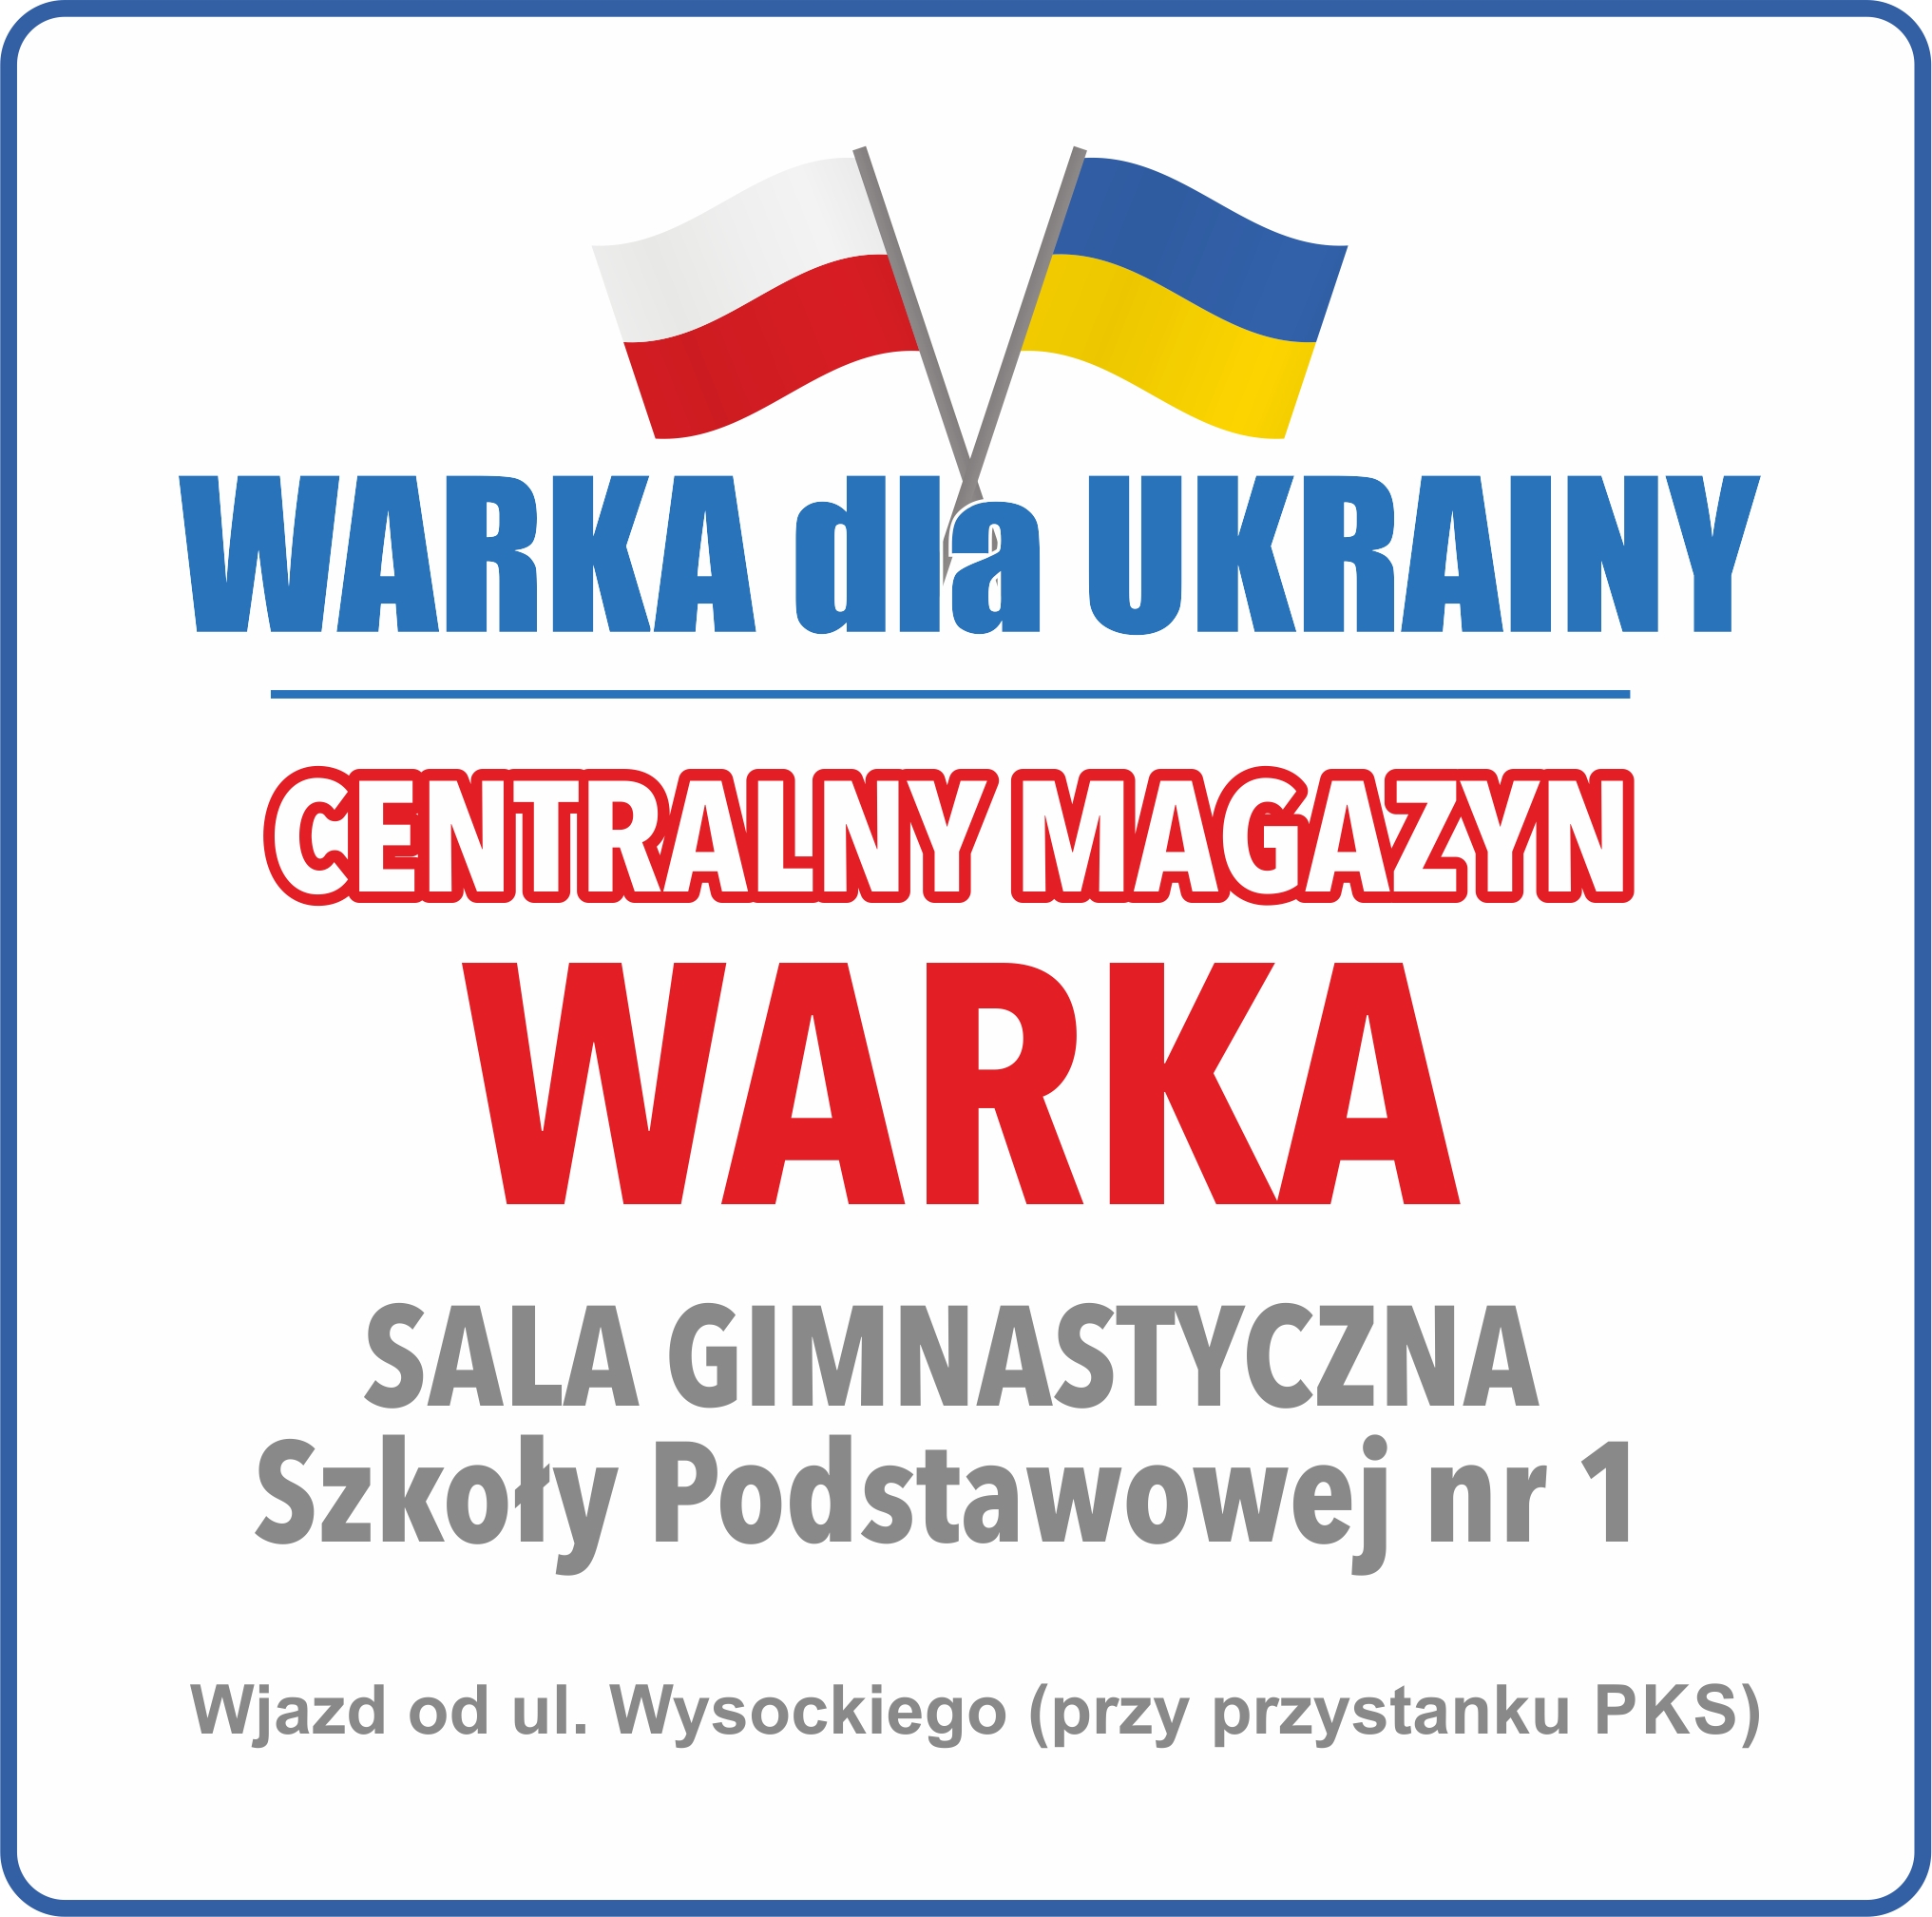 Centralny Magazyn „Warka dla Ukrainy” od poniedziałku 7 marca w Szkole Podstawowej nr 1 w Warce